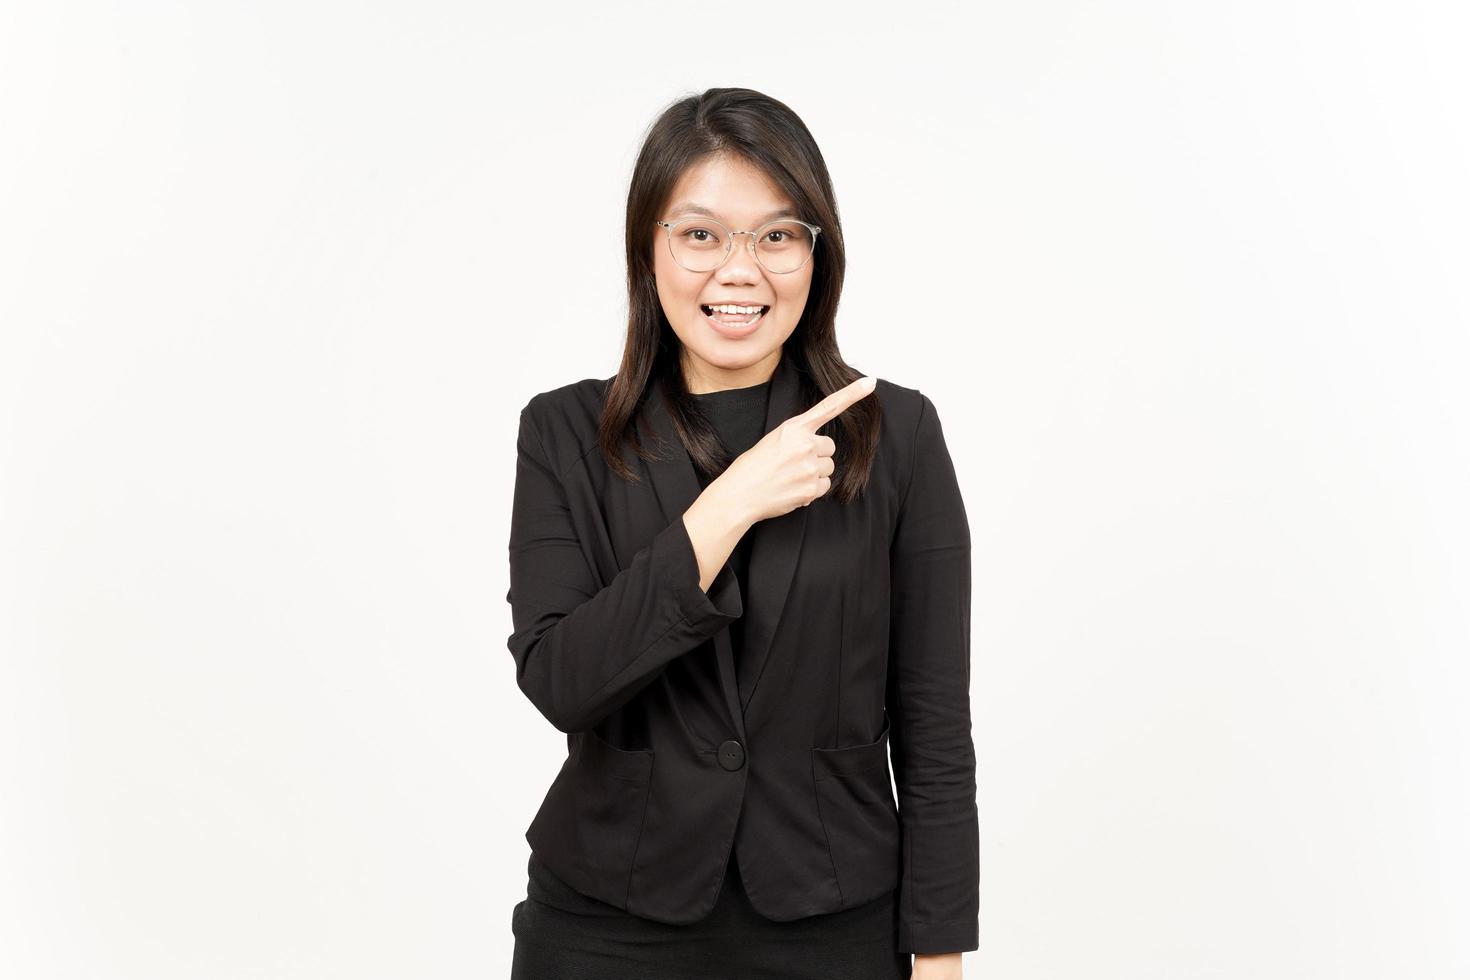 demostración producto y señalando lado de hermosa asiático mujer vistiendo negro chaqueta de sport aislado en blanco foto